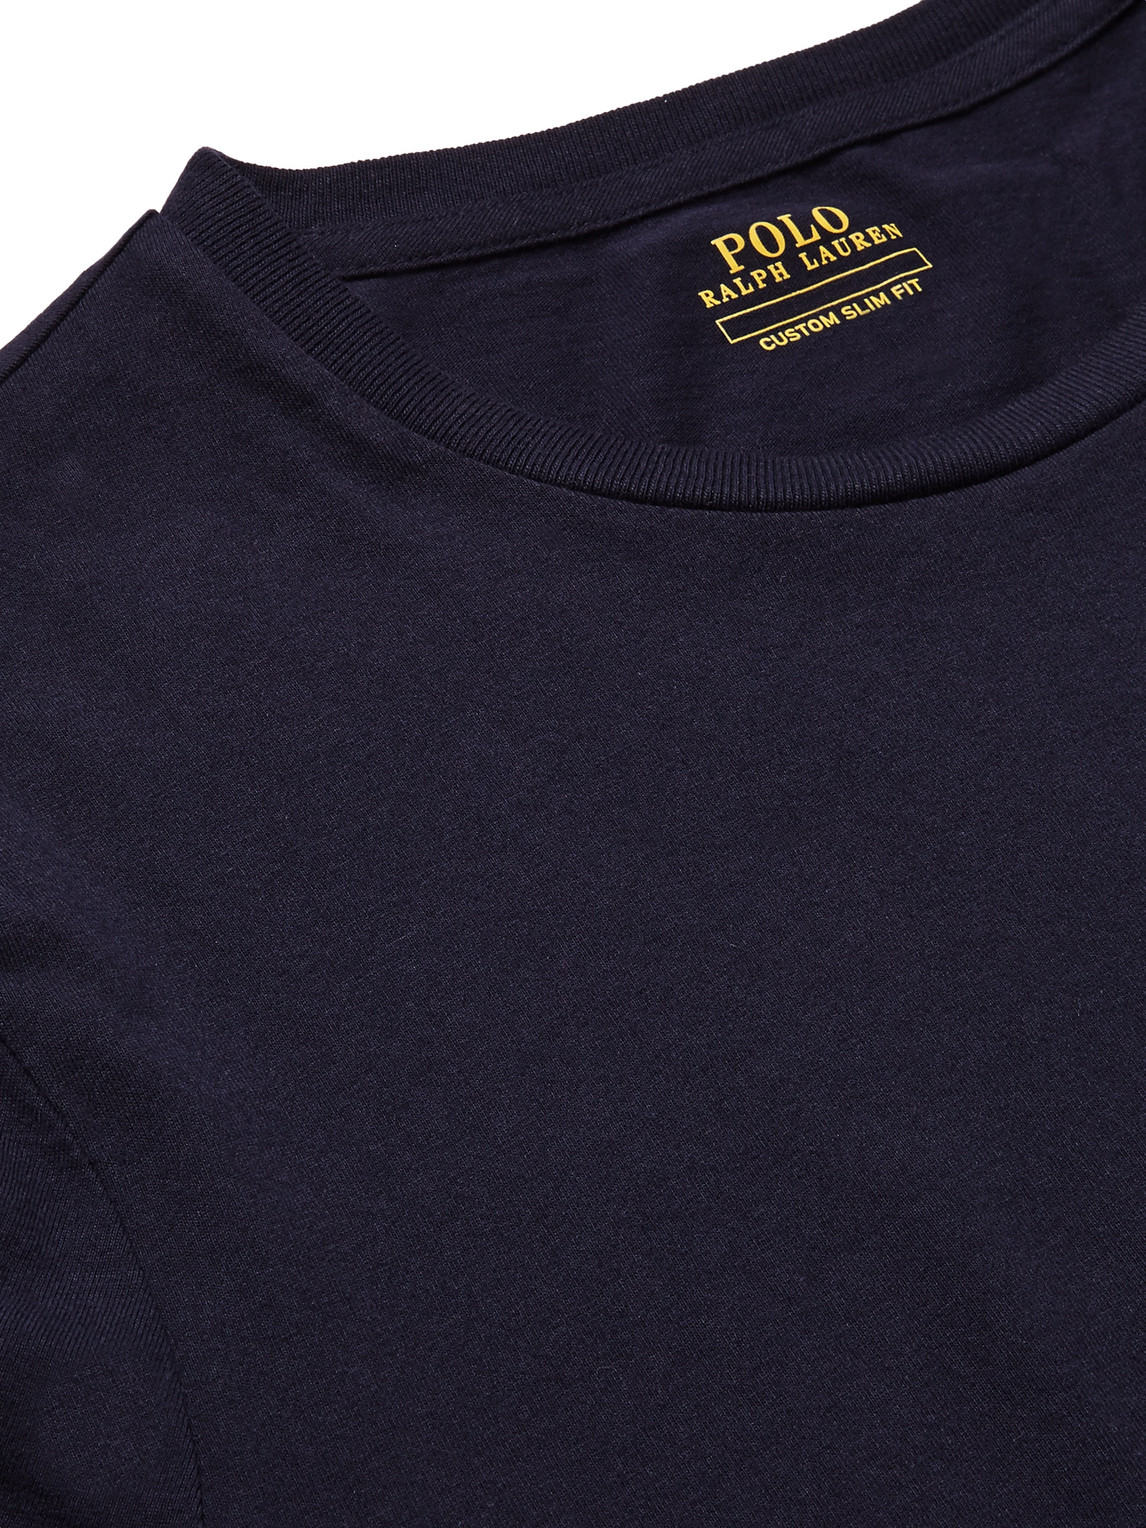 Polo Ralph Lauren - Cotton-Jersey T-Shirt - Men - Blue - XXL pour hommes